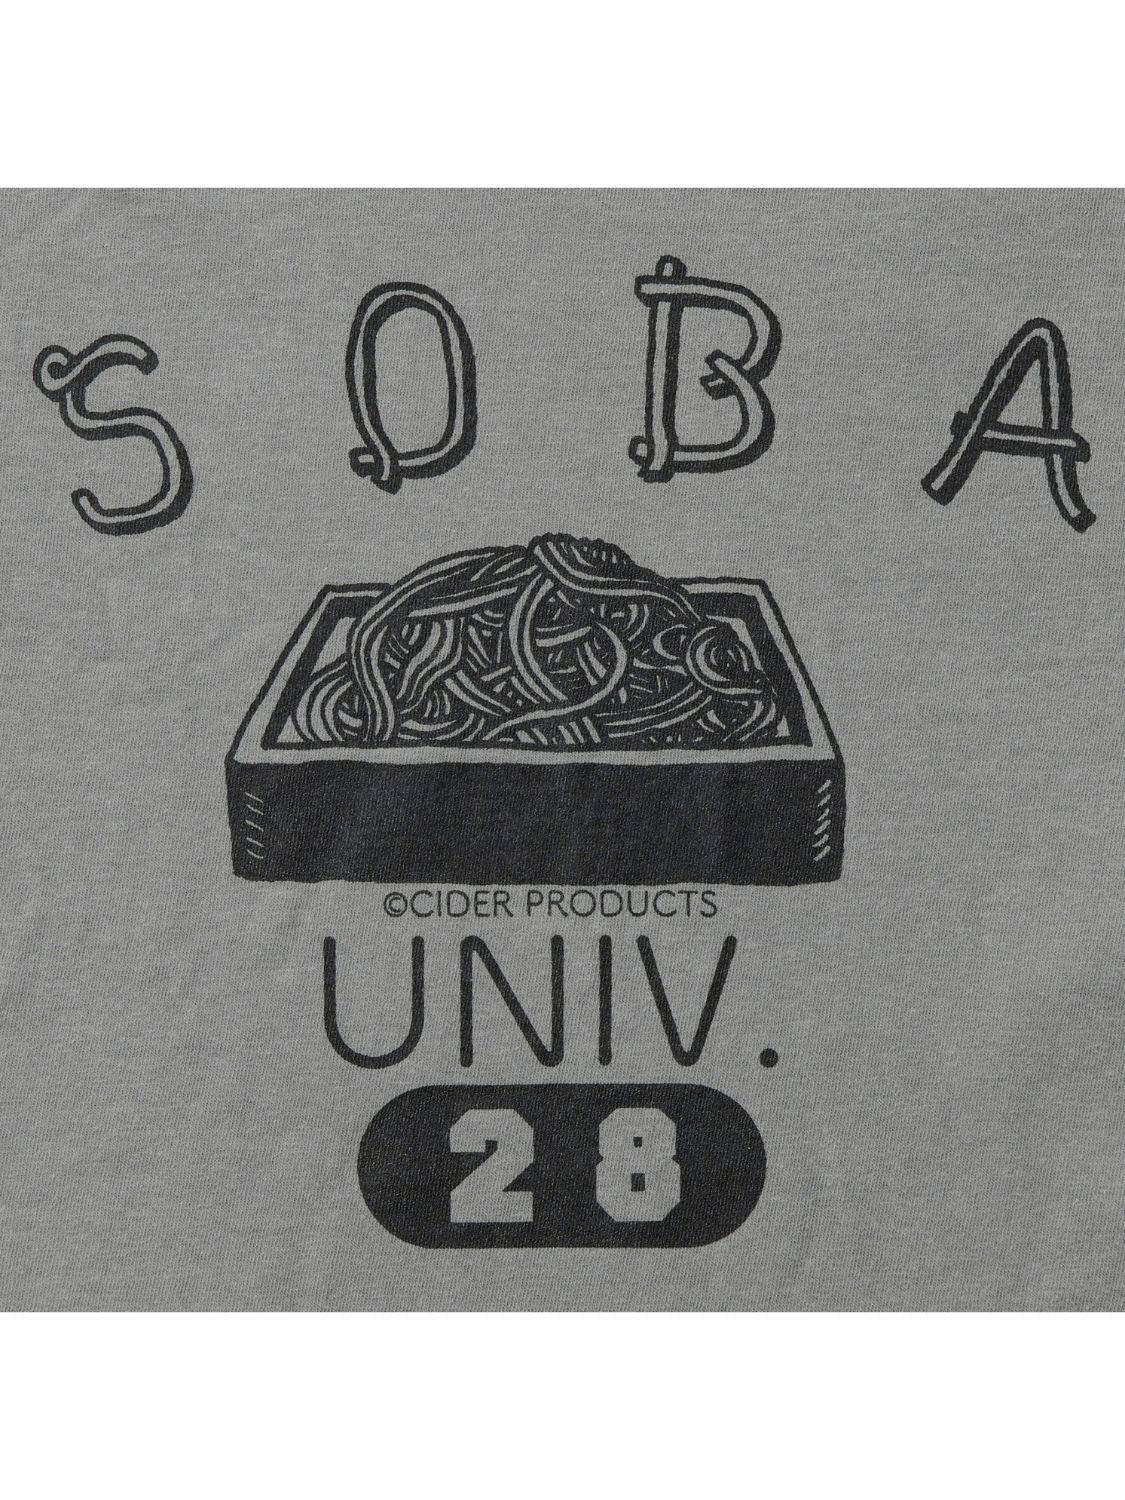 SOBA UNIV. Tshirt / ペッパー